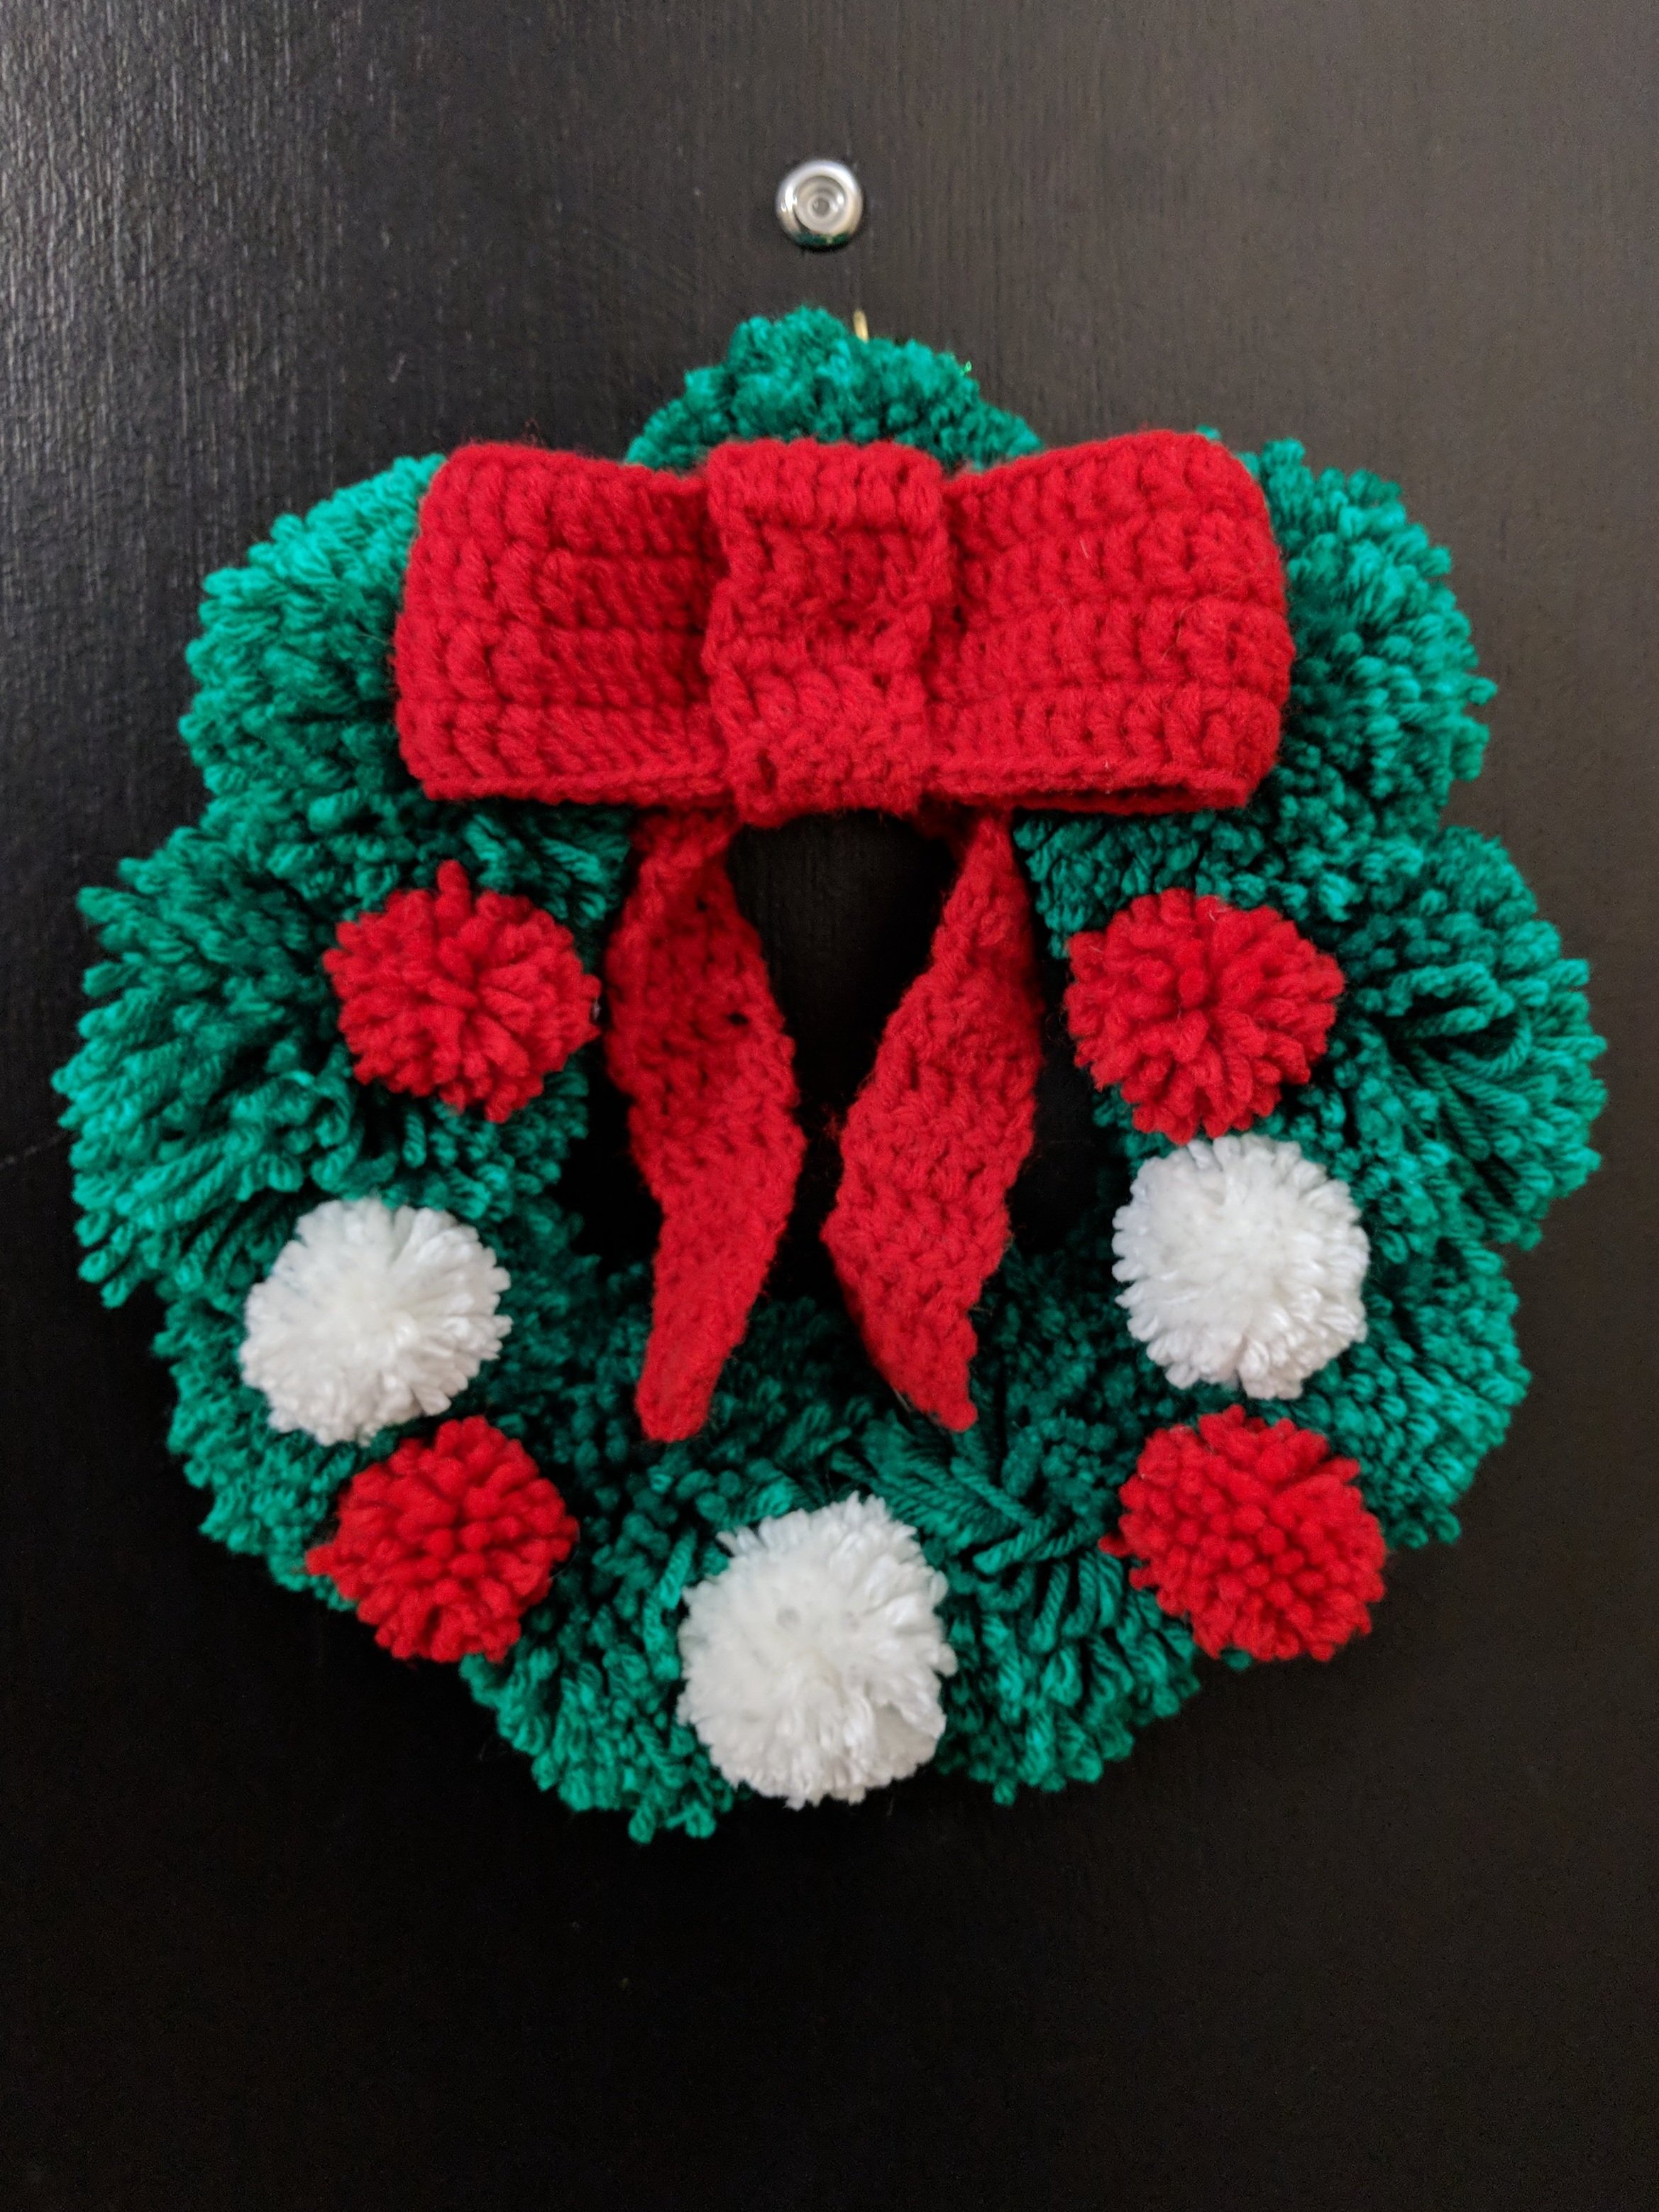 DIY Yarn Christmas Pom Pom Wreath - That Craft Site - fun and easy